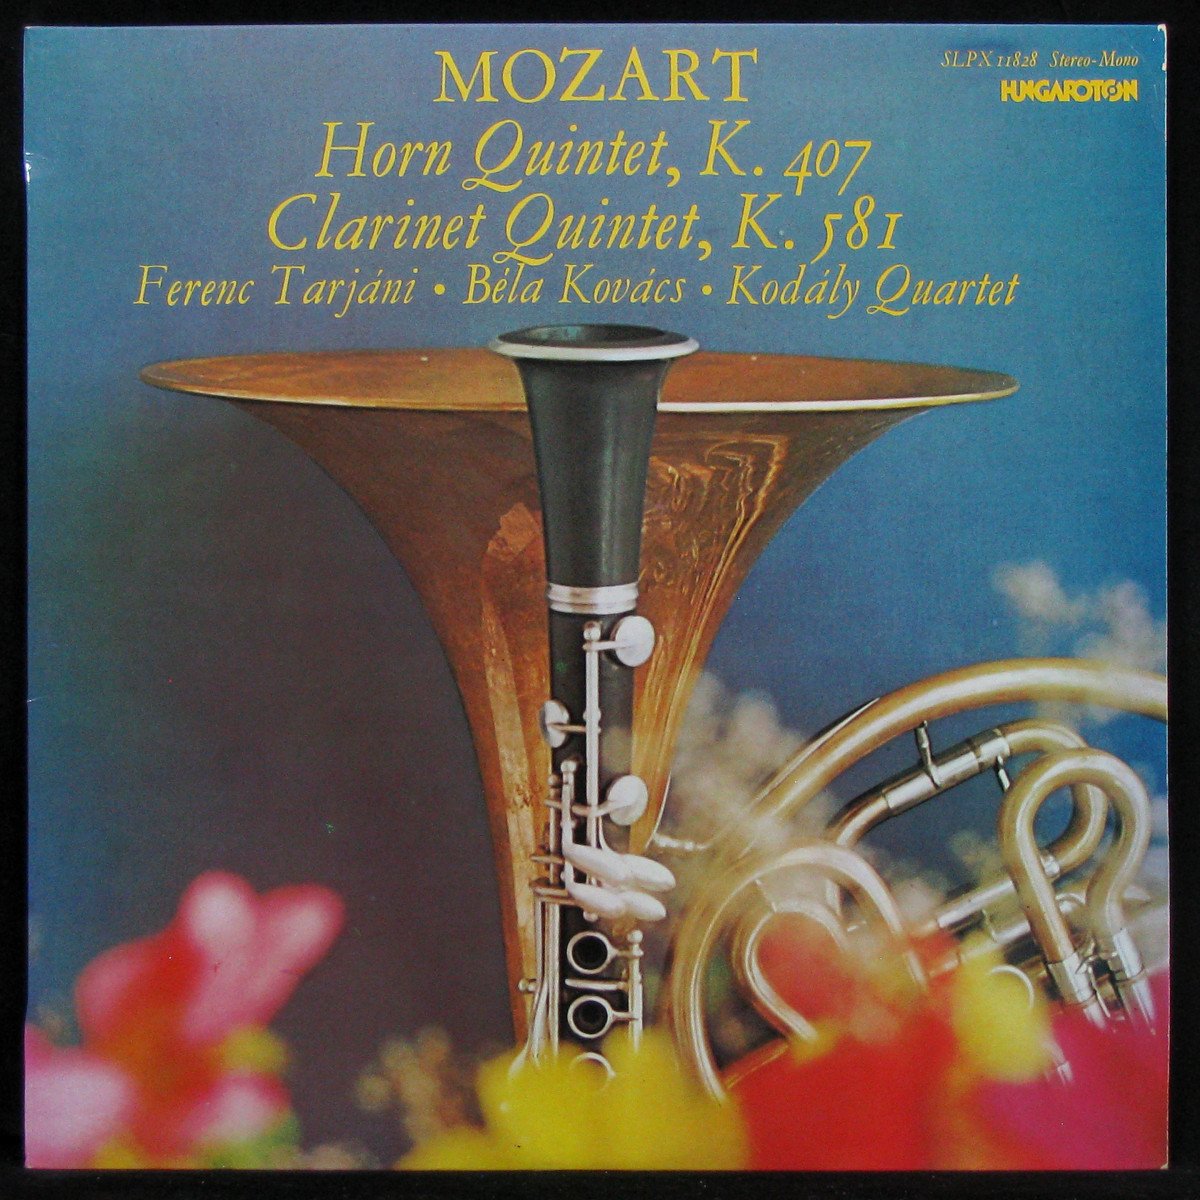 Mozart: Horn Quintet, K. 407 / Clarinet Quintet, K. 581